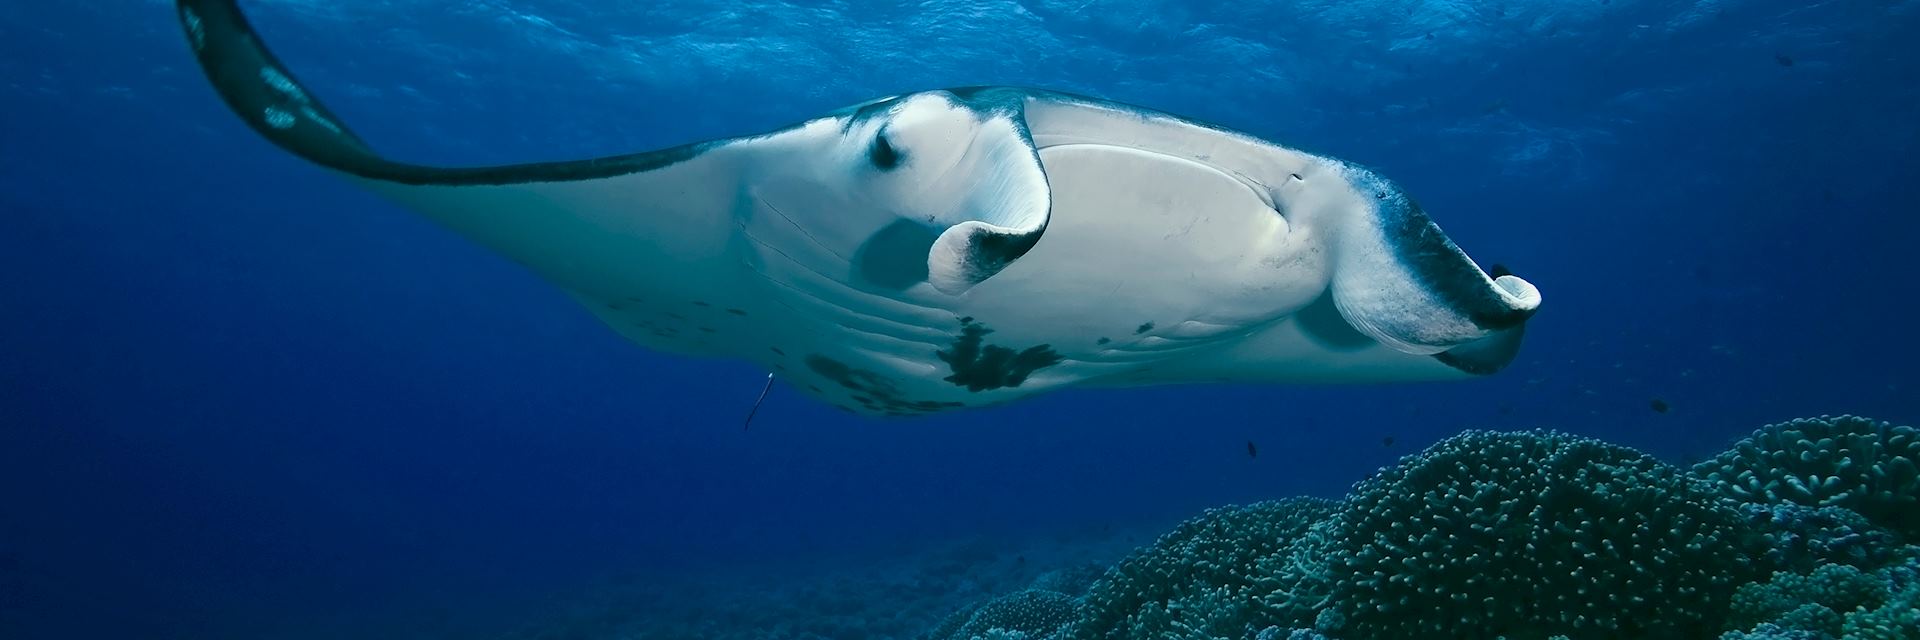 Manta ray, French Polynesia